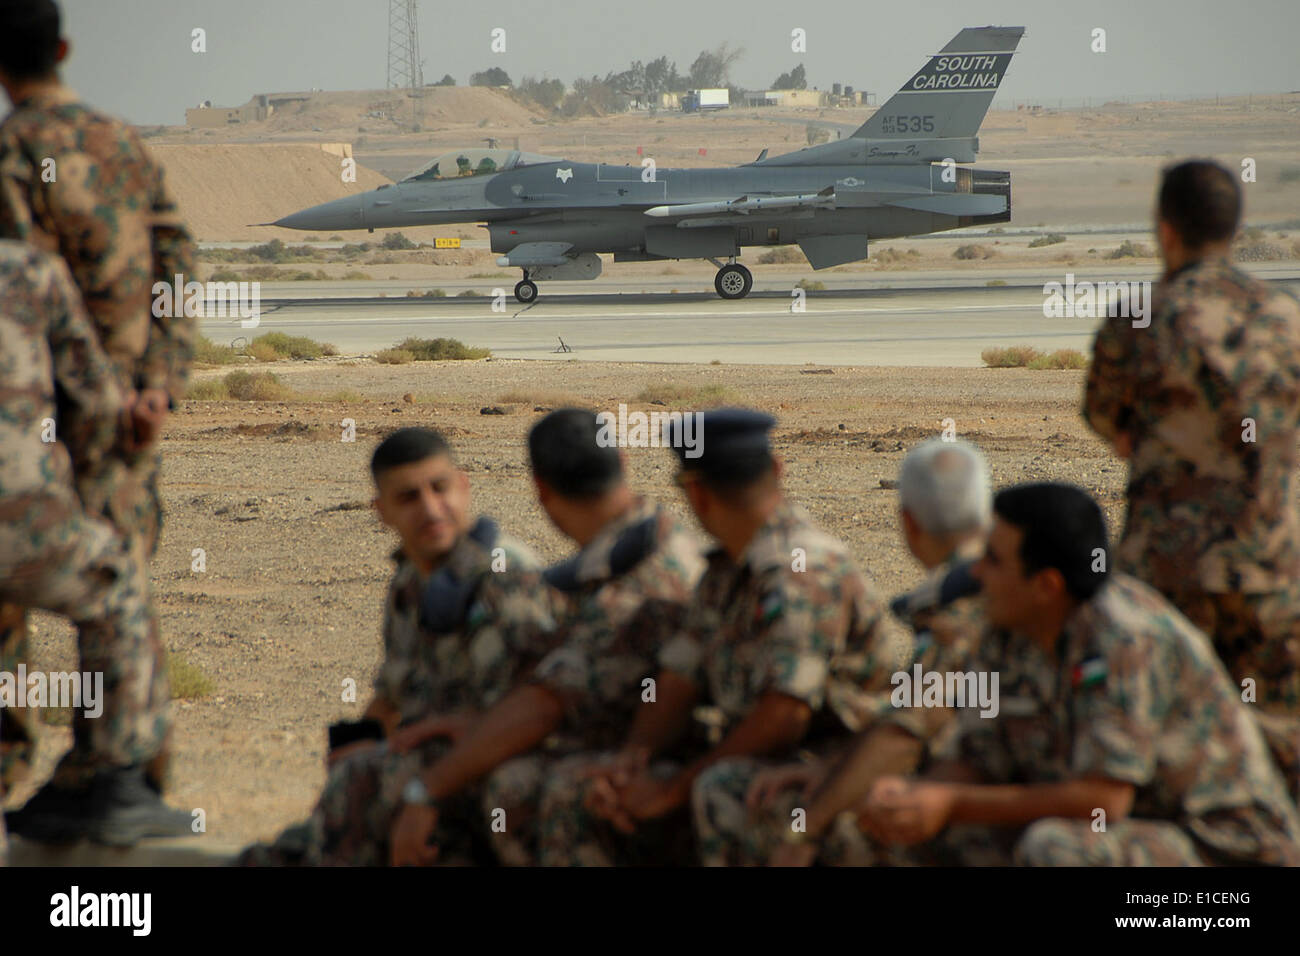 U.S. Air Force Lt. Col. Scott Bridgers and Maj. Michael Ferrario prepare to takeoff from Mwaffaq Salti Air Base in Al Azraq, Jo Stock Photo